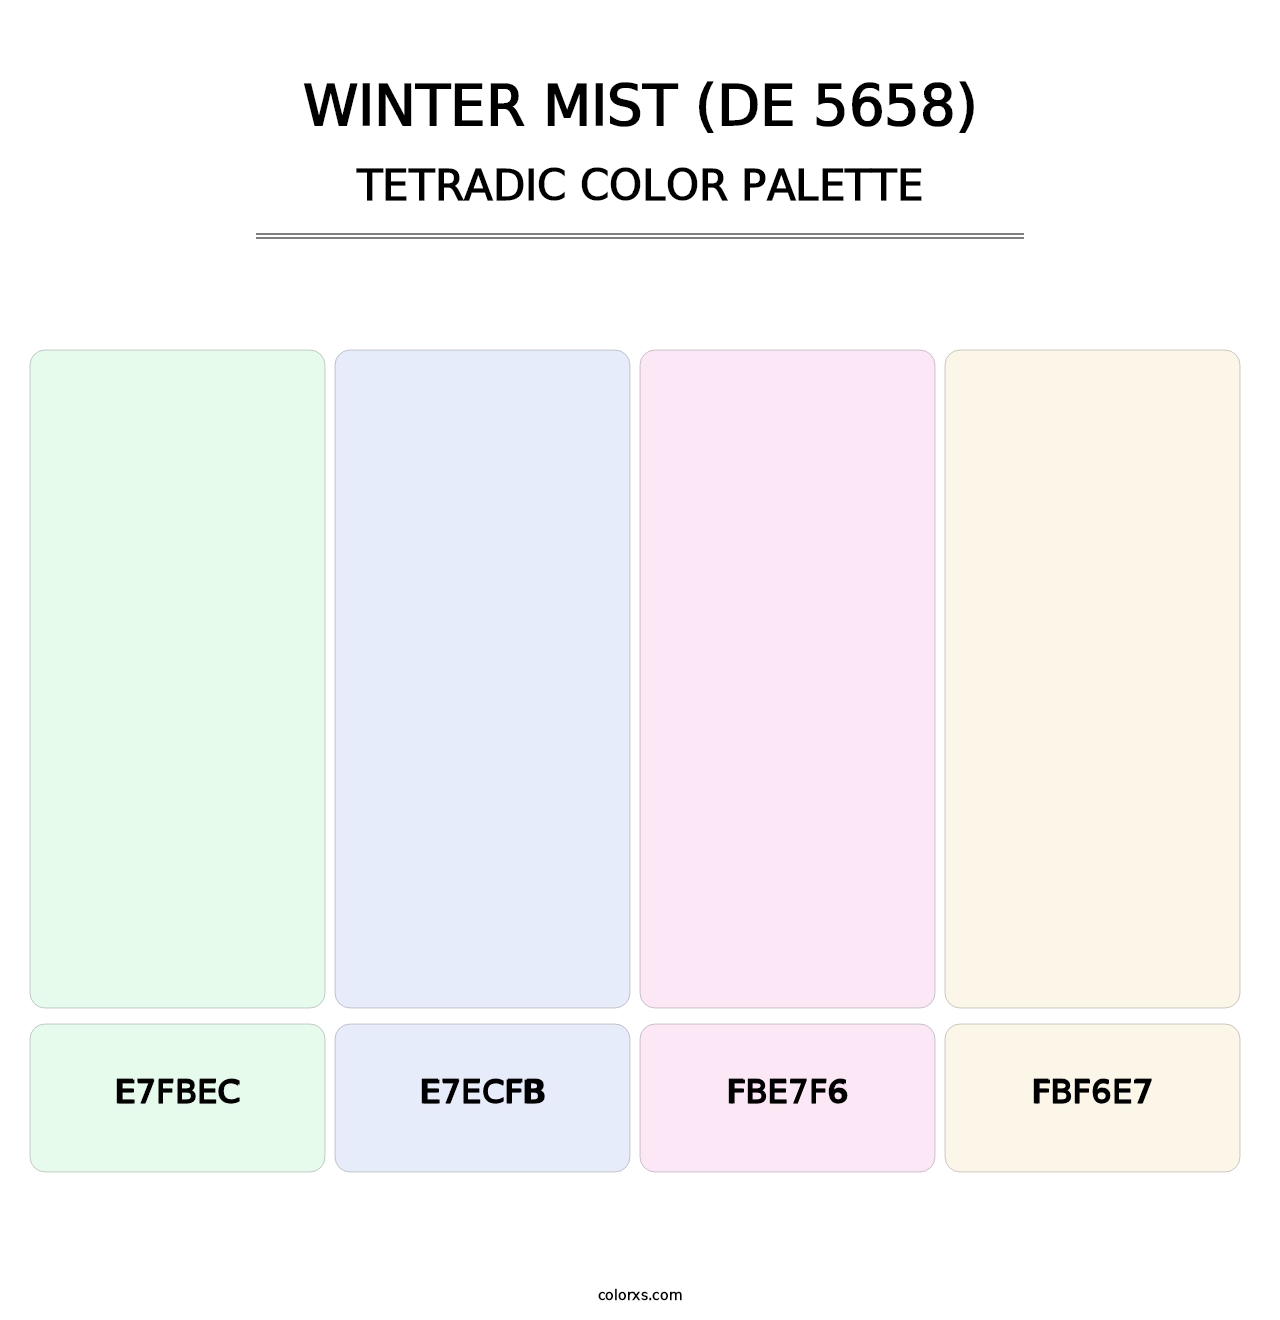 Winter Mist (DE 5658) - Tetradic Color Palette